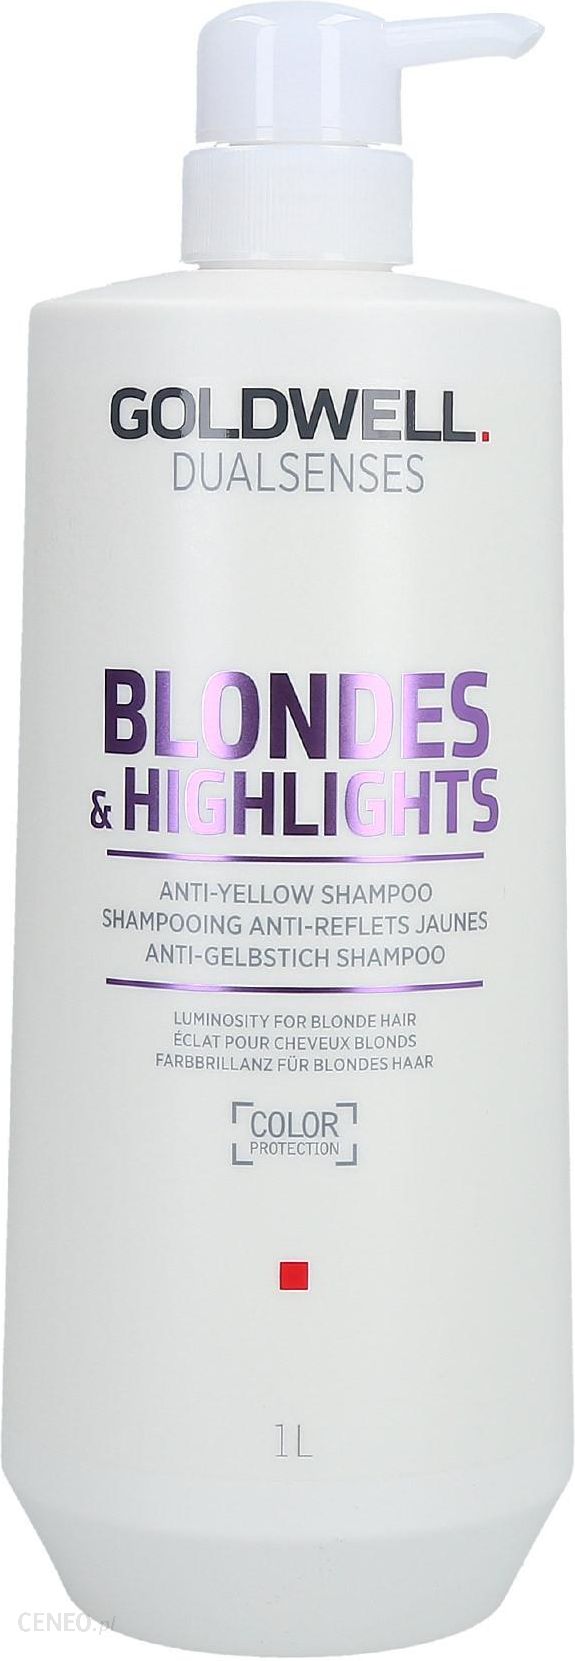 szampon do włosów blond goldwell